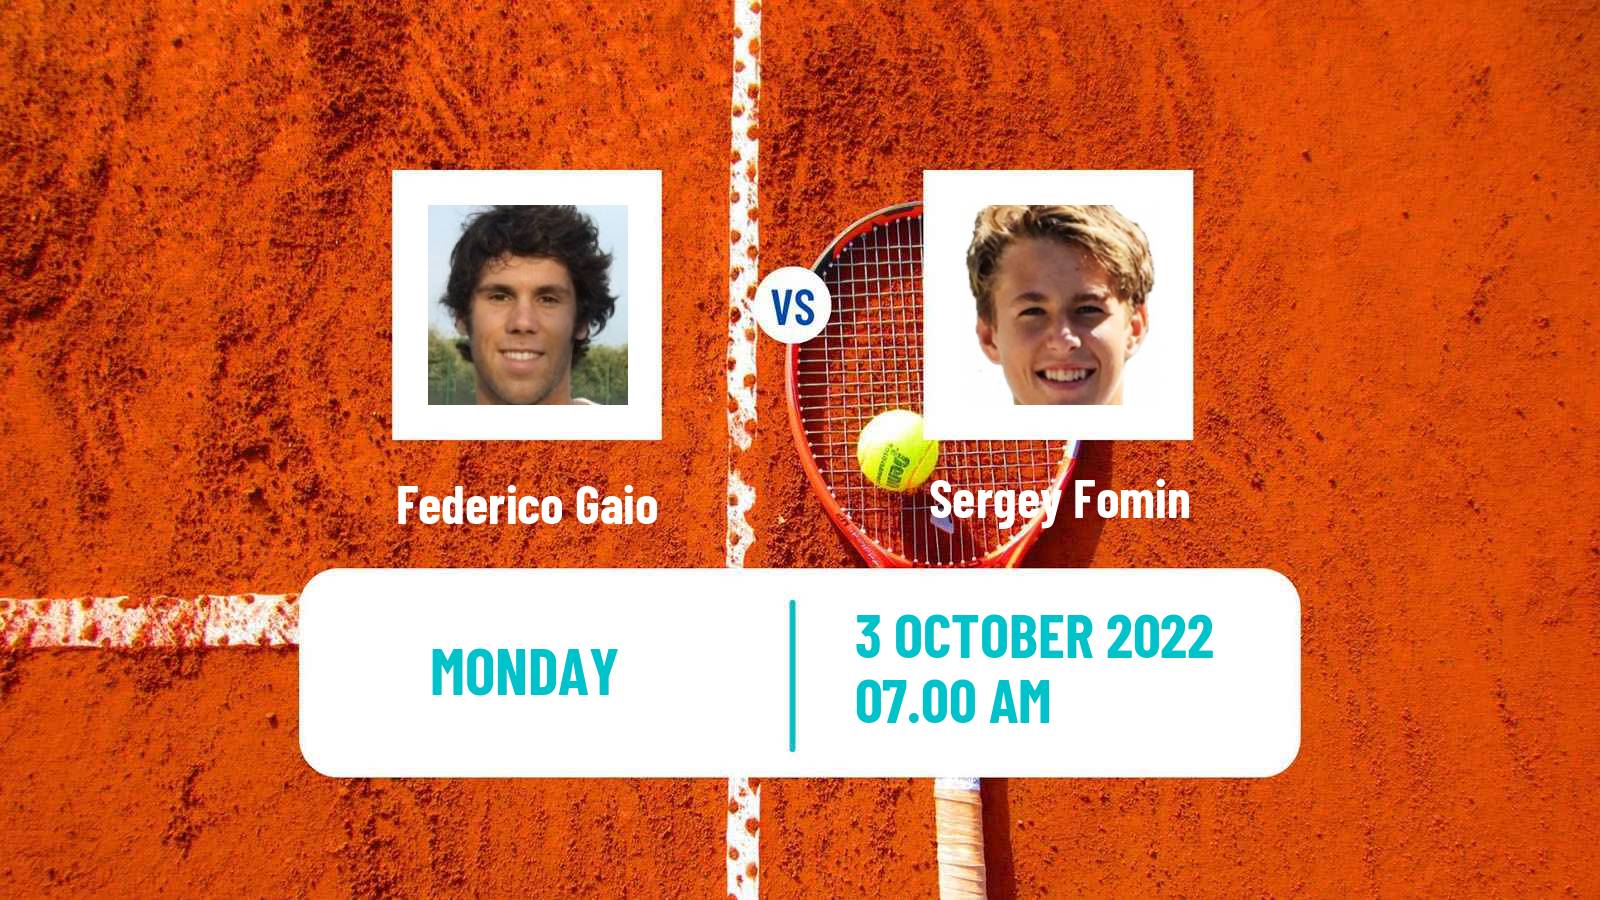 Tennis ATP Challenger Federico Gaio - Sergey Fomin